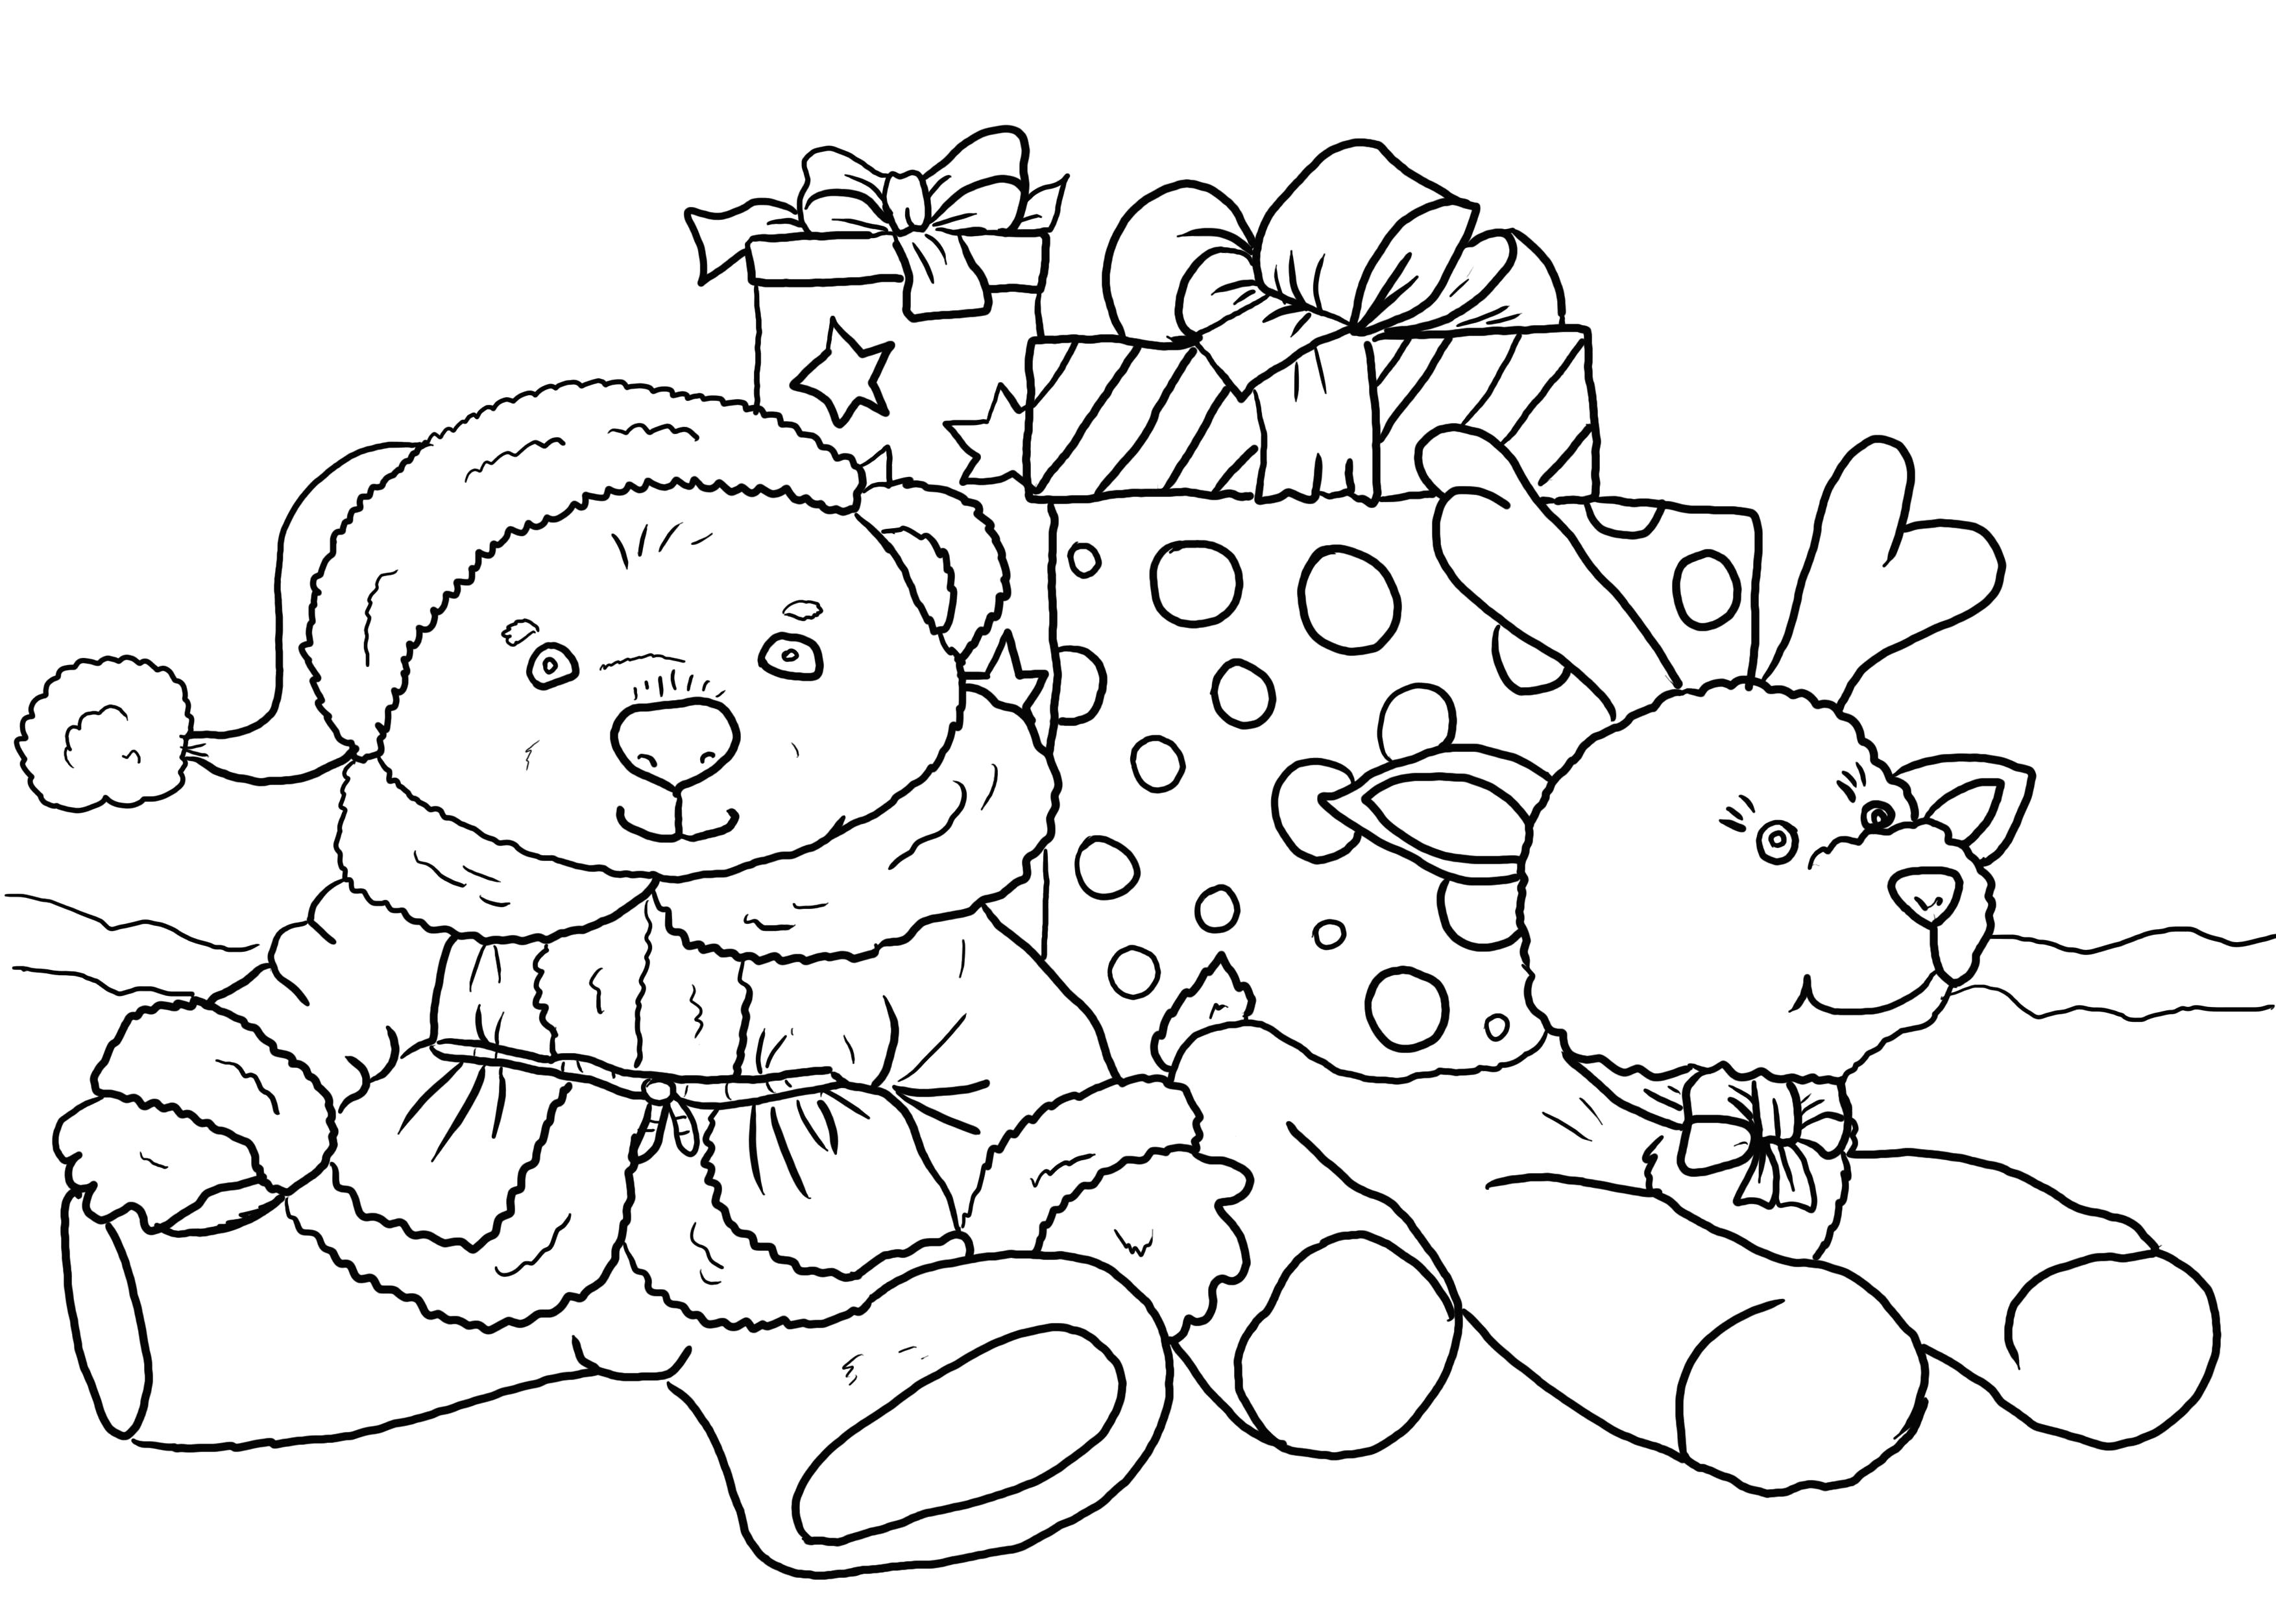 Раскраска игрушечный мишка и олененок. Скачать новогодние.  Распечатать новогодние